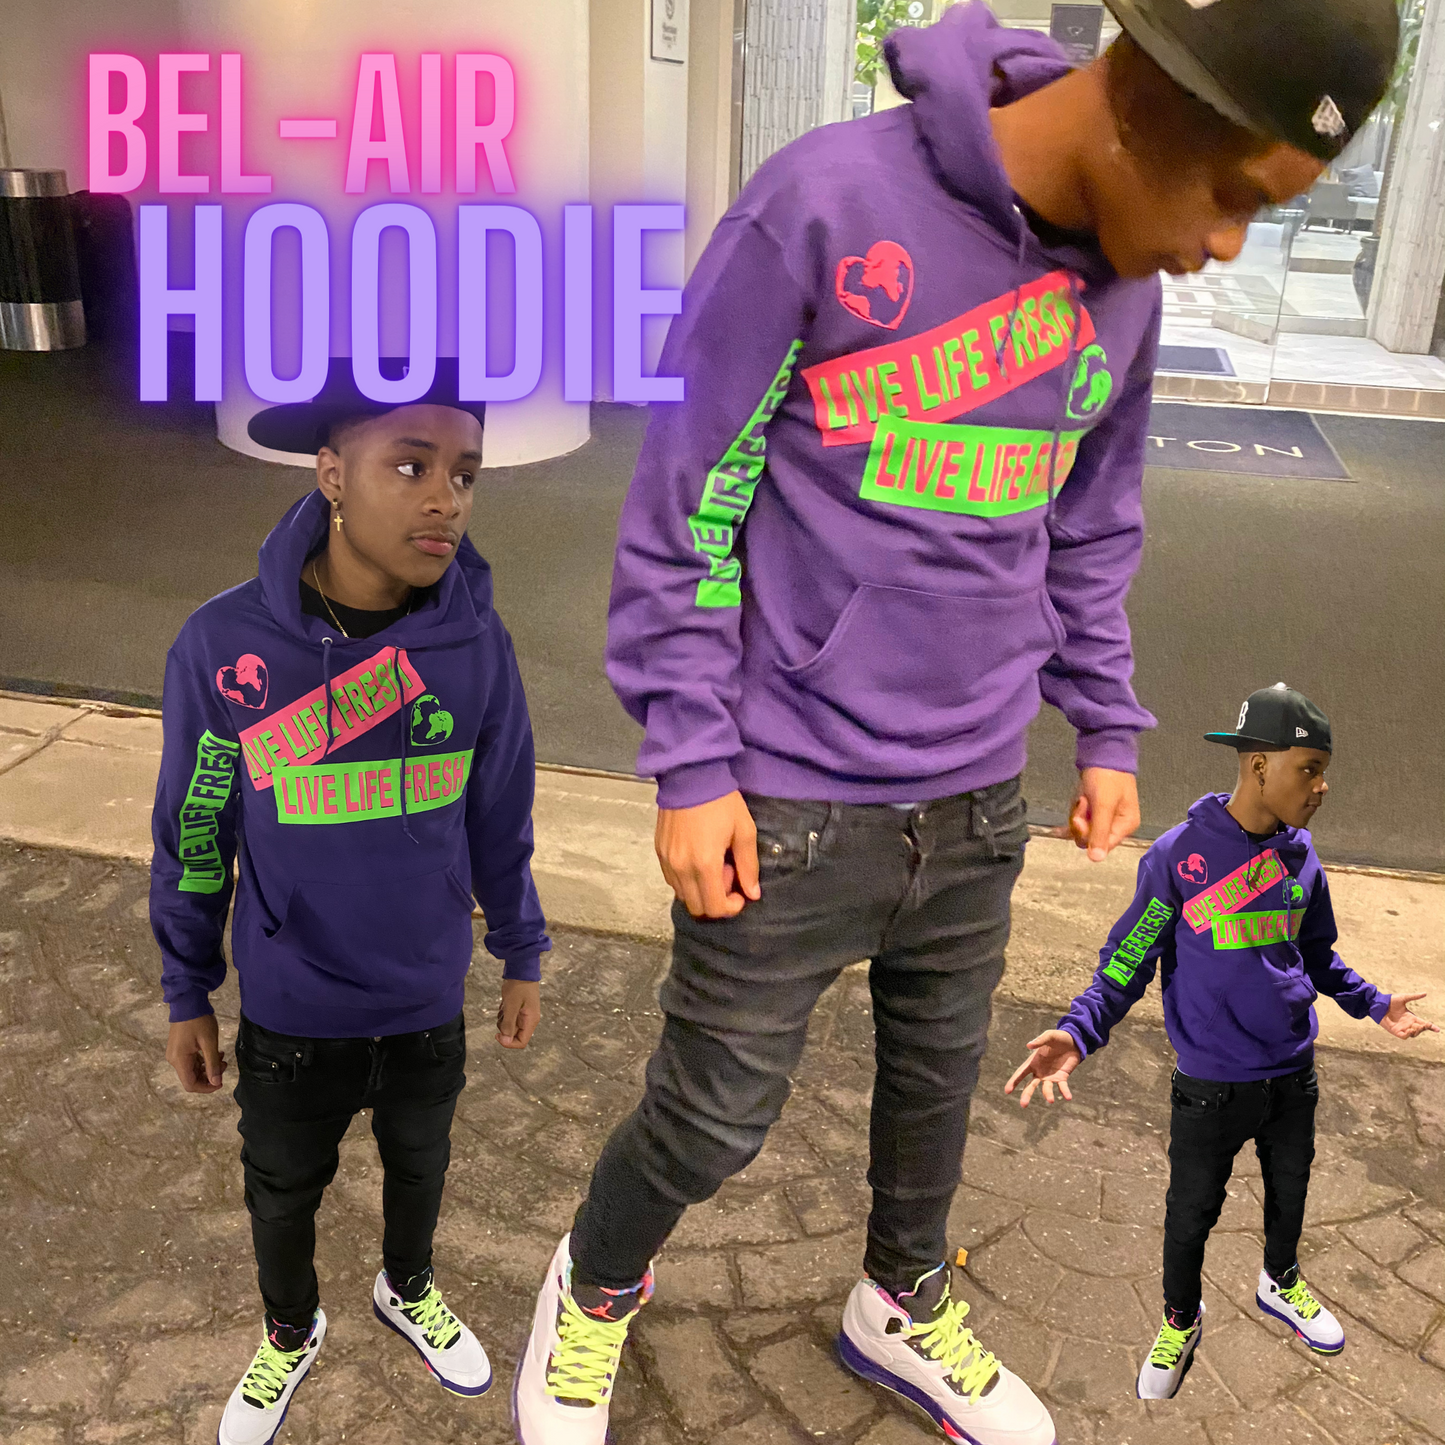 Bel-Air Hoodie